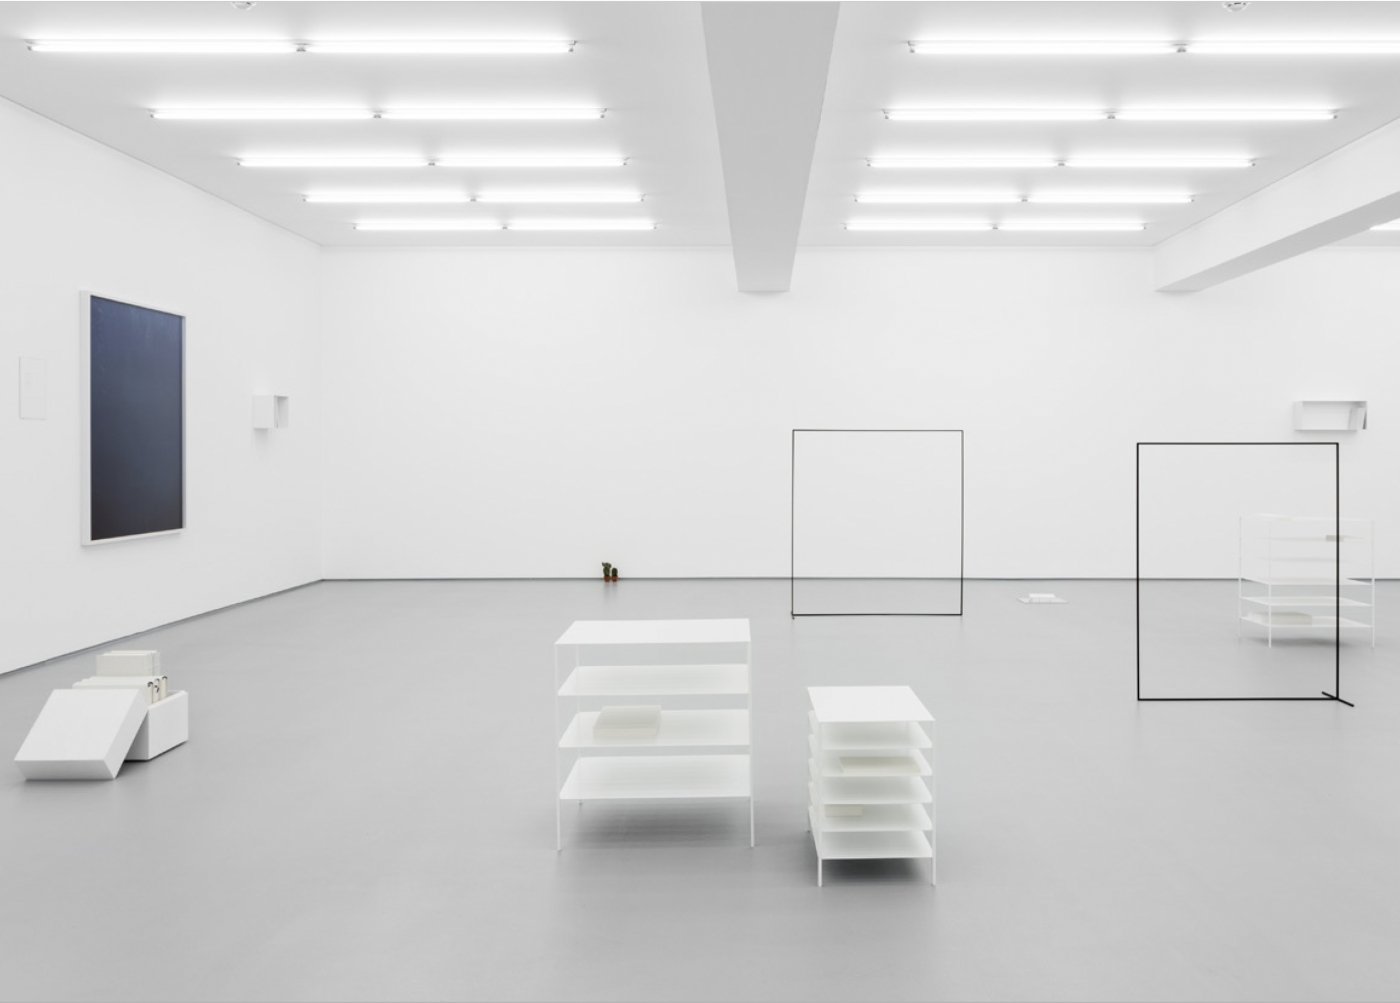 Exhibition view: Fourteen Works, Daniel Gustav Cramer, Galeria Vera Cortês, 2017
